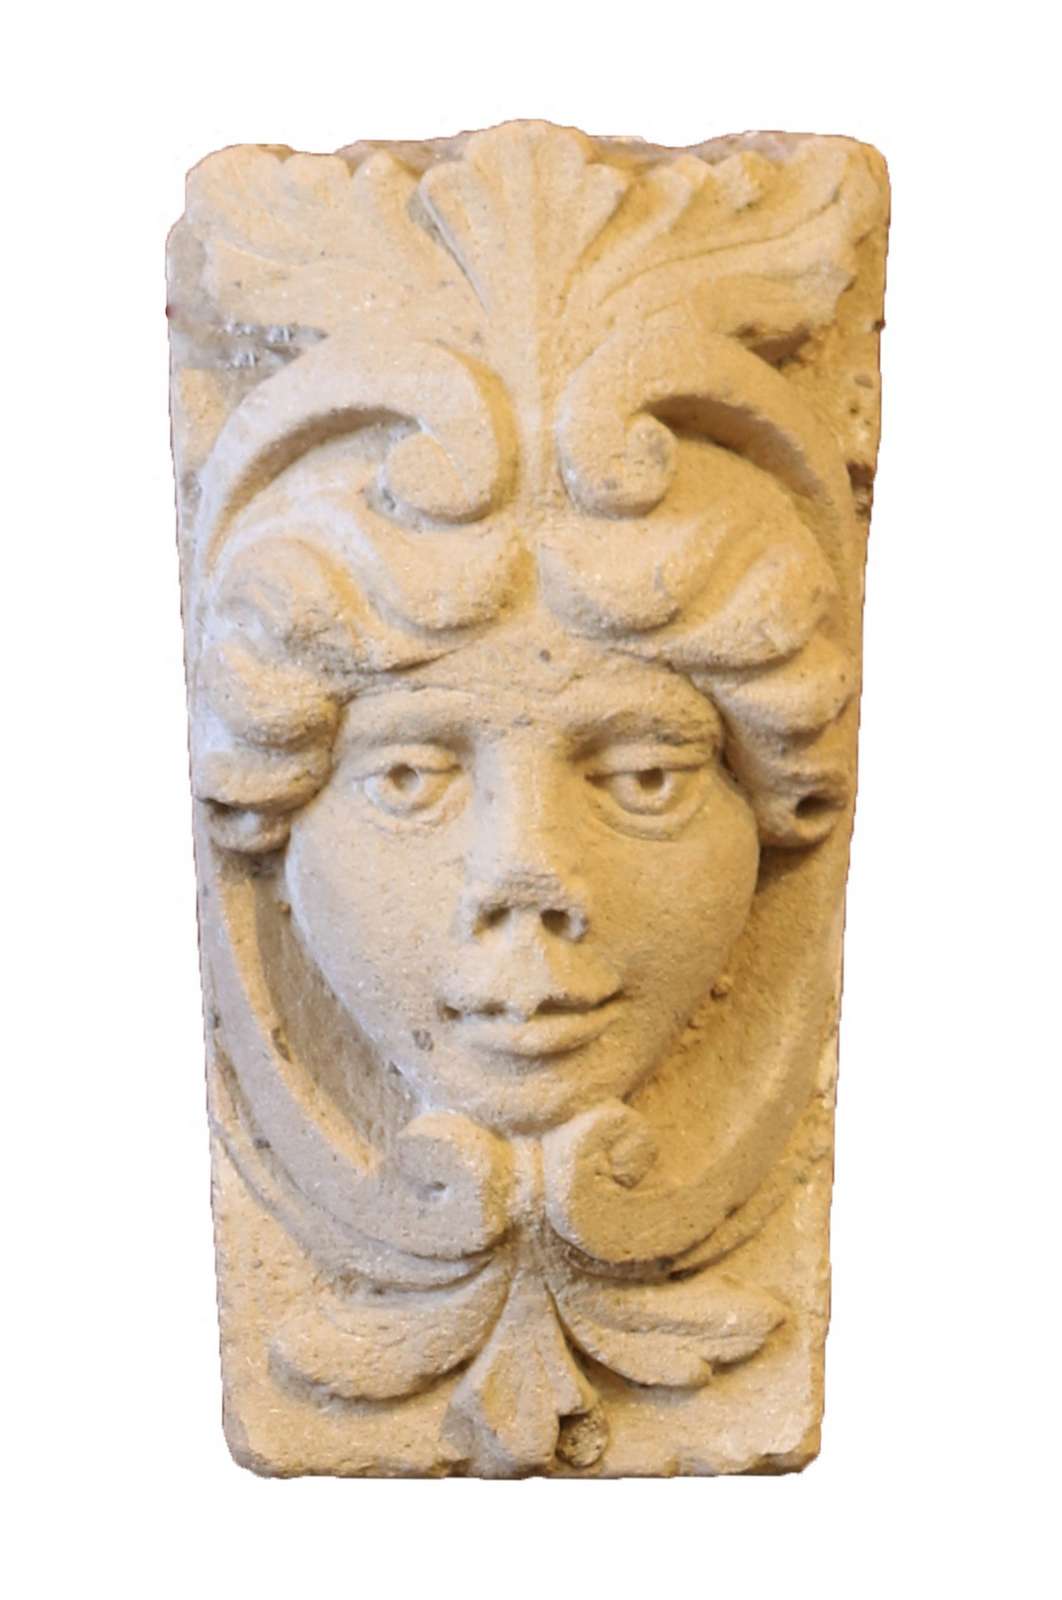 Antico mascherone in pietra. Epoca 1700. - Mascheroni Antichi - Arredo Giardino - Prodotti - Antichità Fiorillo